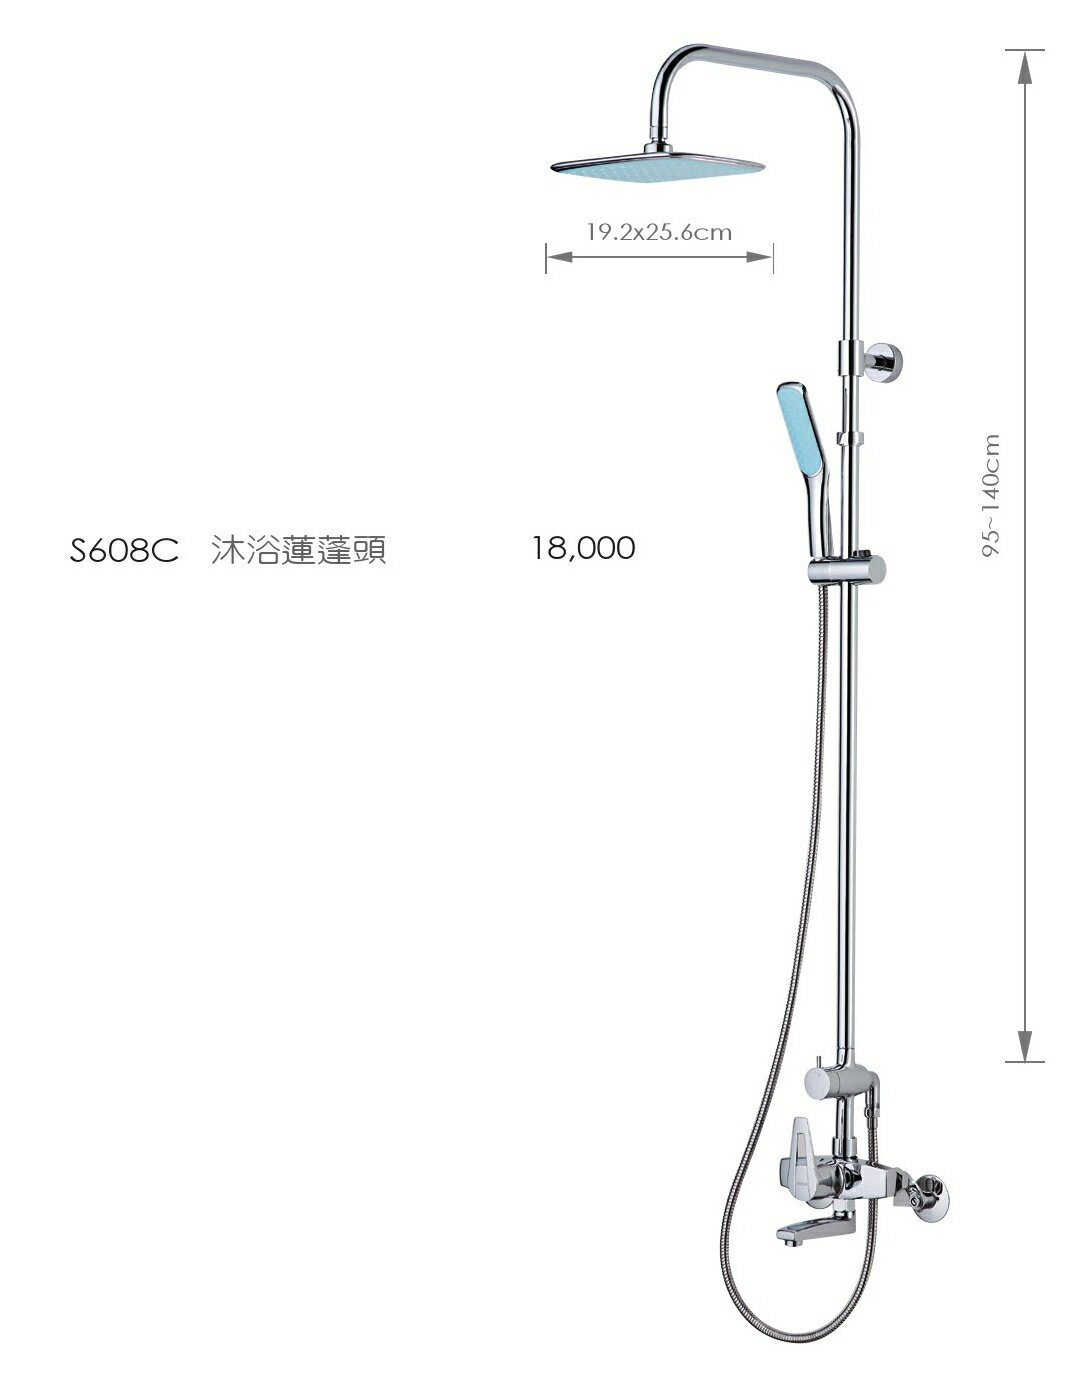 caesar凱撒衛浴】淋浴蓮蓬頭(S608C) | 洗樂適衛浴直營店| 樂天市場Rakuten